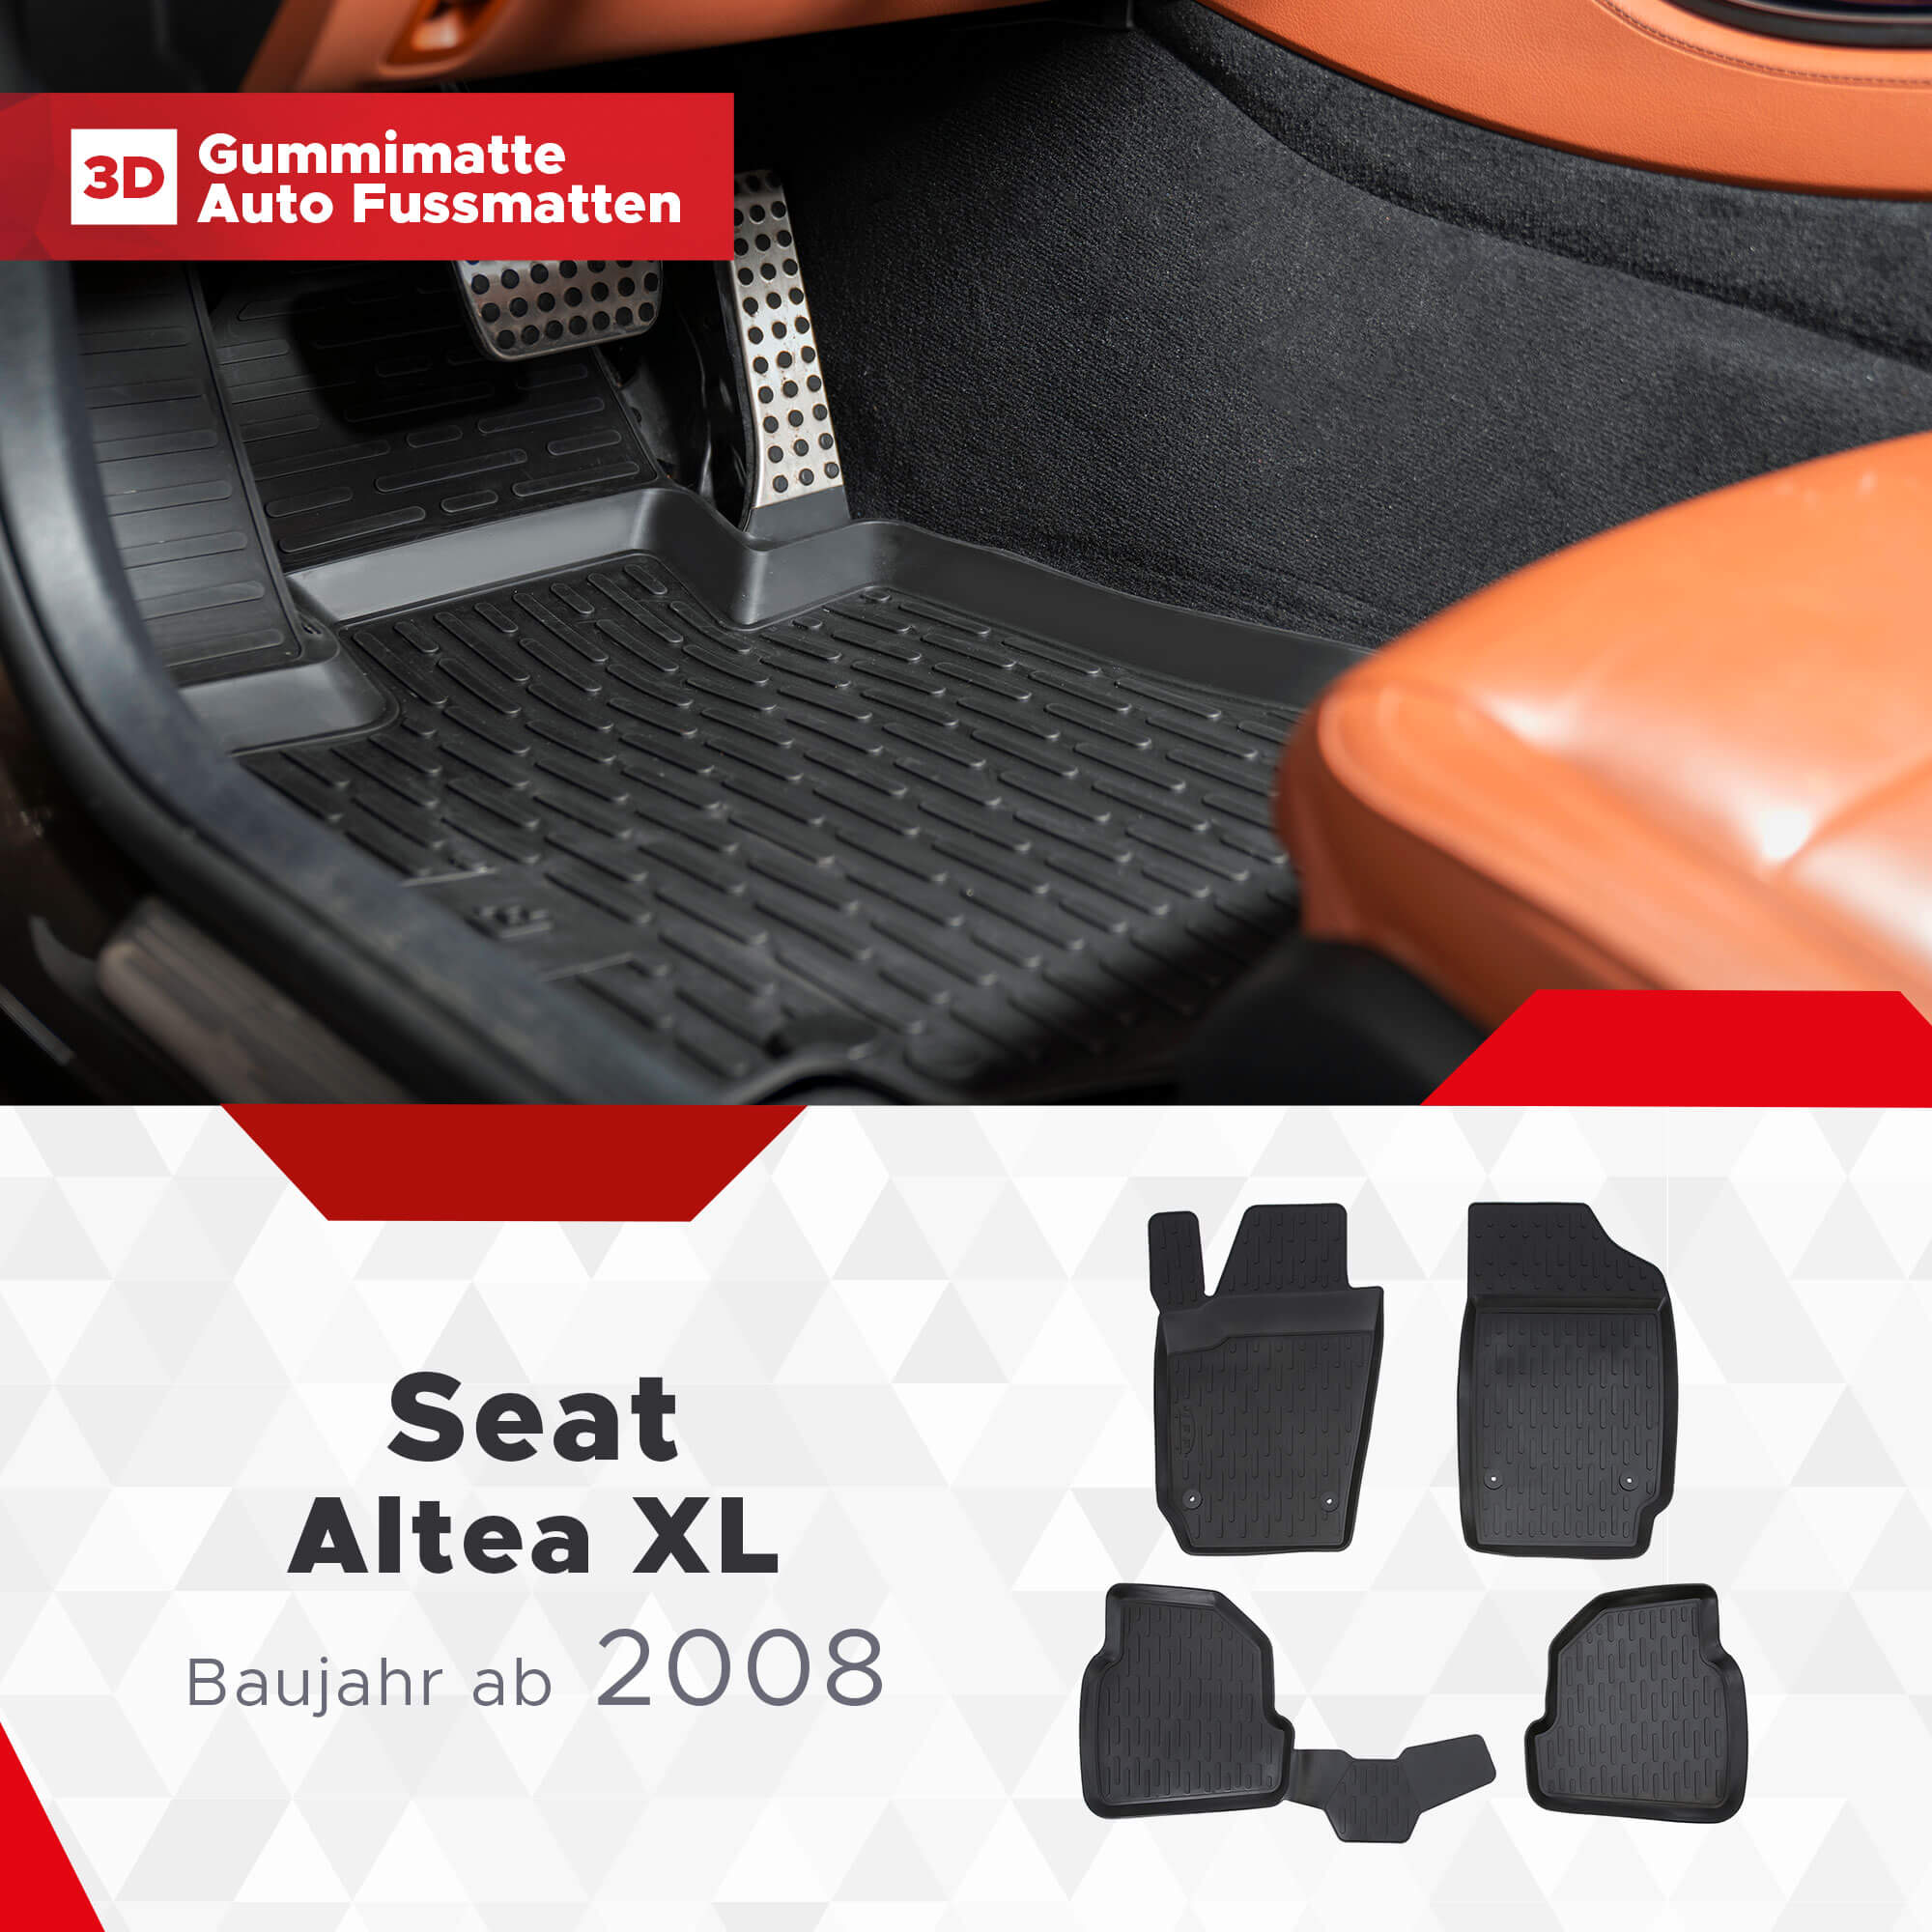 3D Fußmatten passend für Seat Altea XL ab 2008